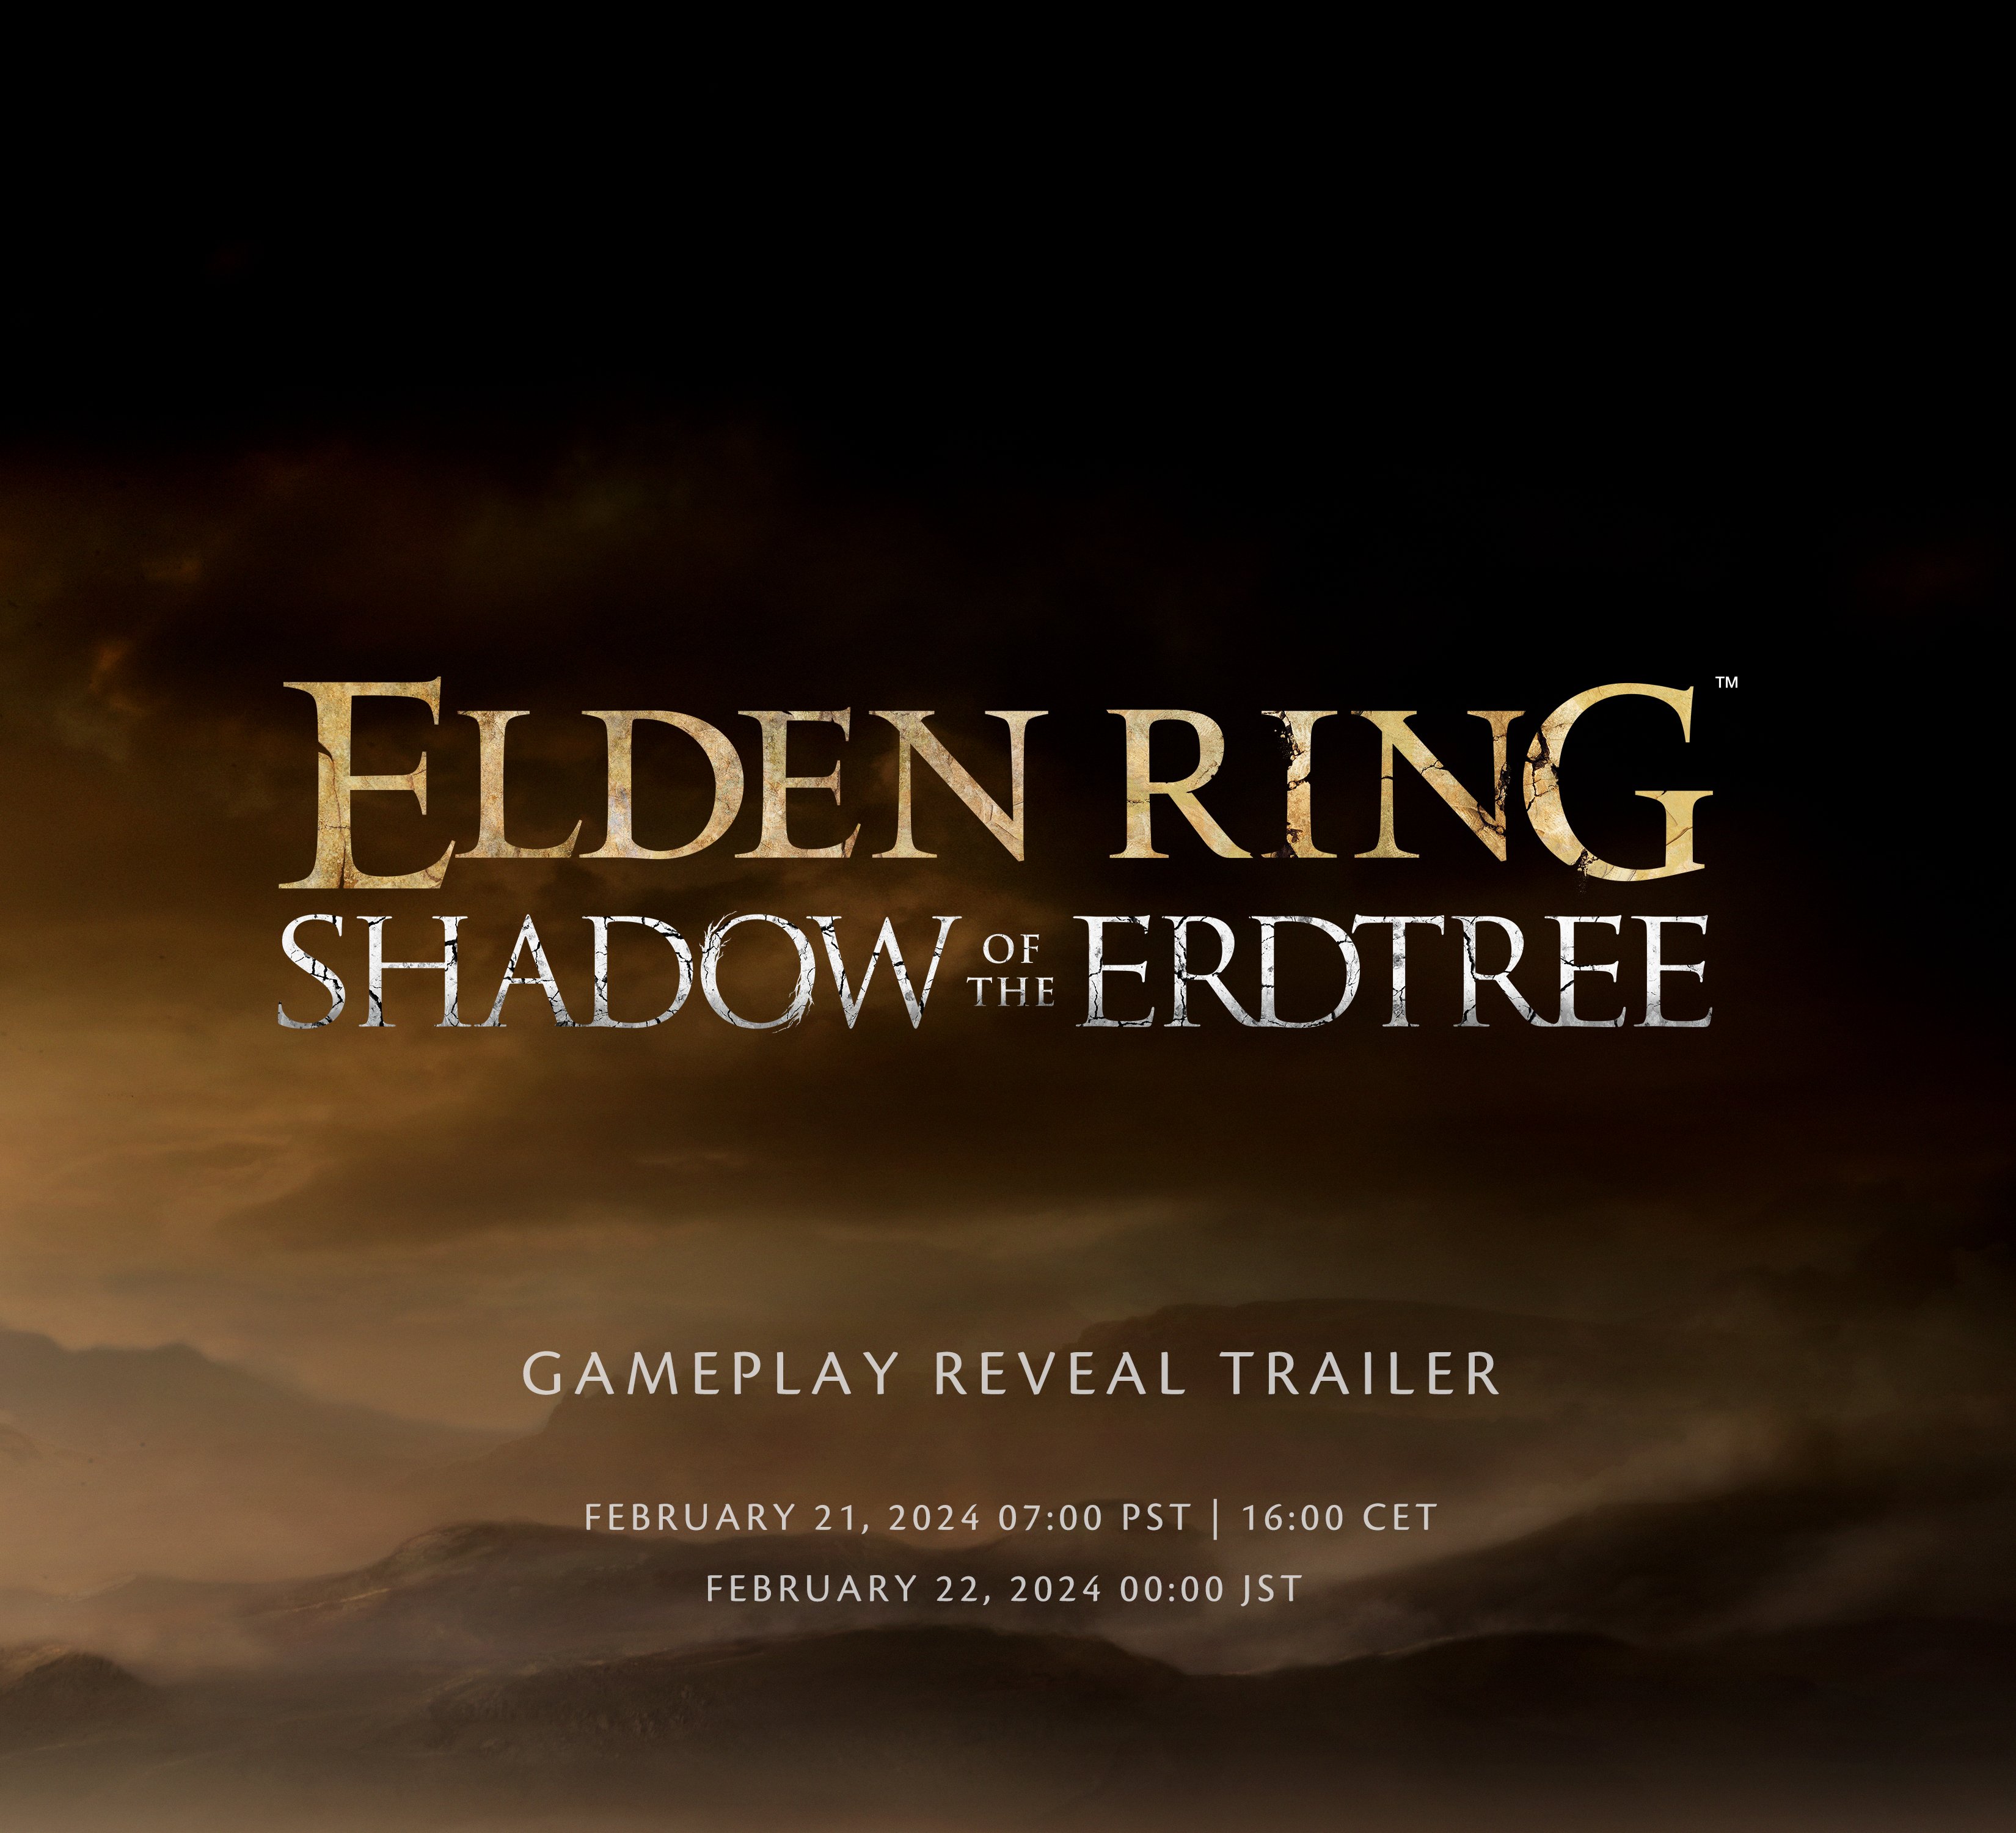 Elden Ring - Overview Trailer